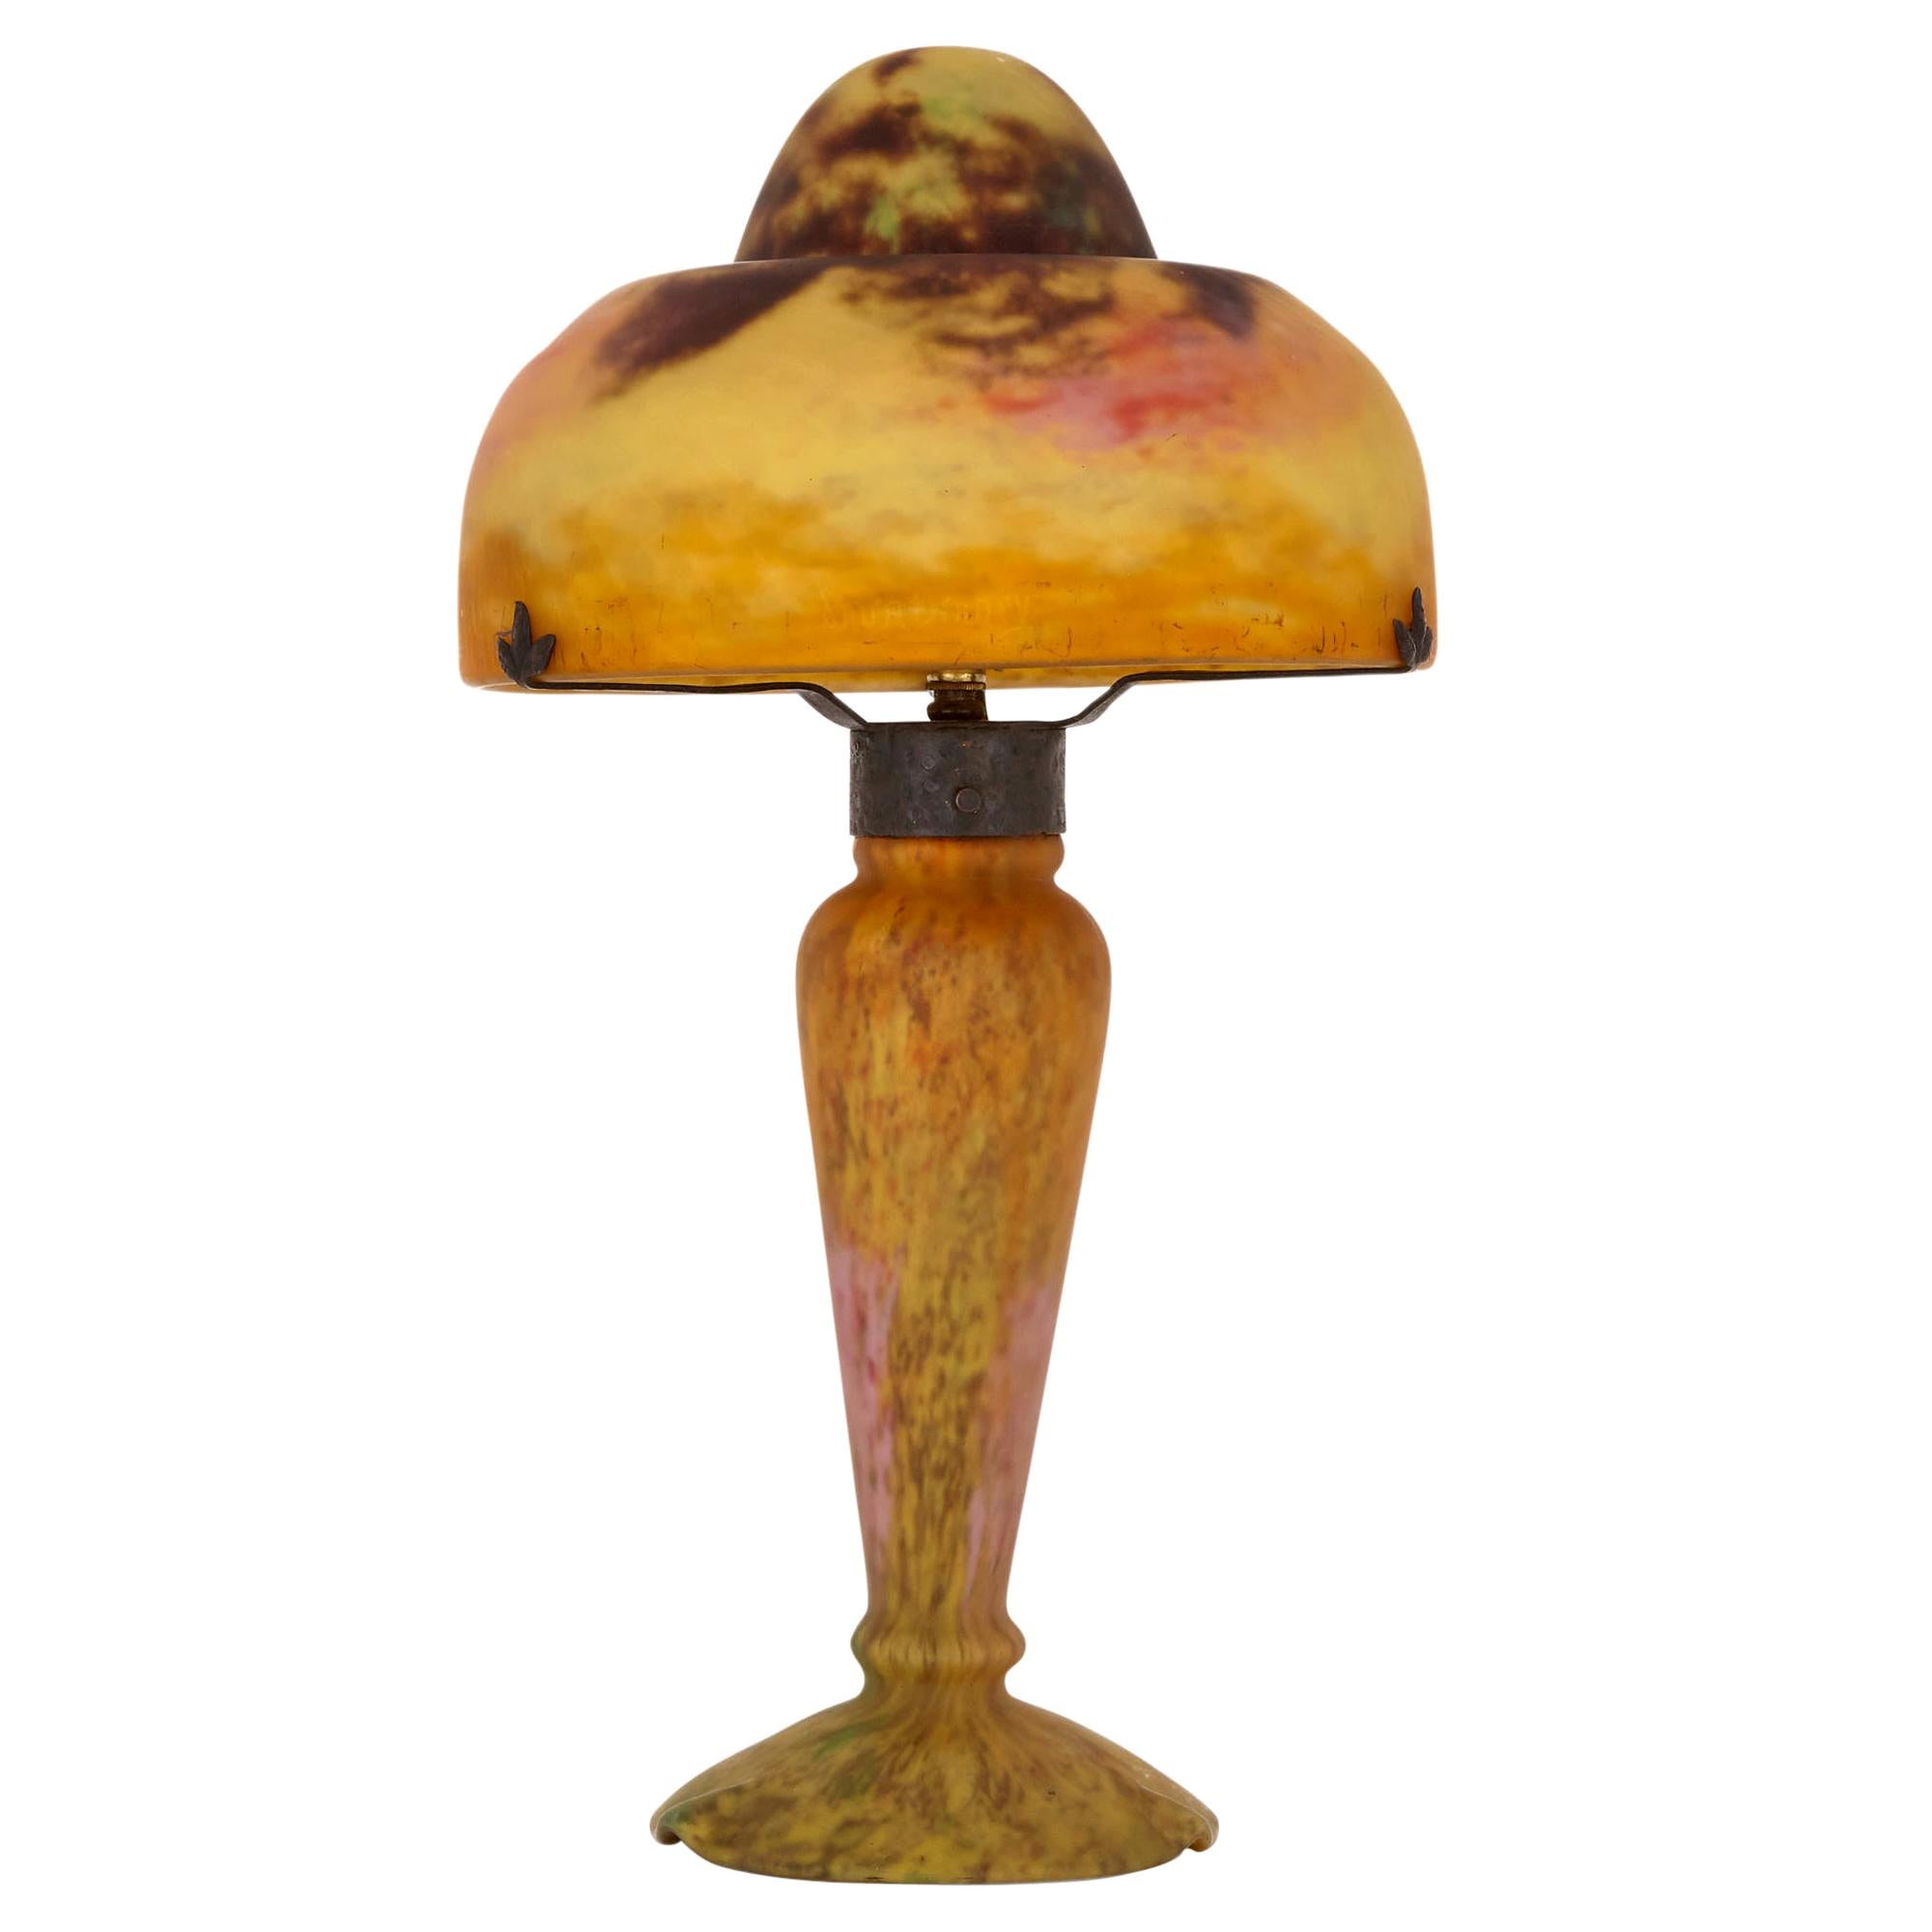 Antique French Art Nouveau Period Glass Lamp by Daum Studio